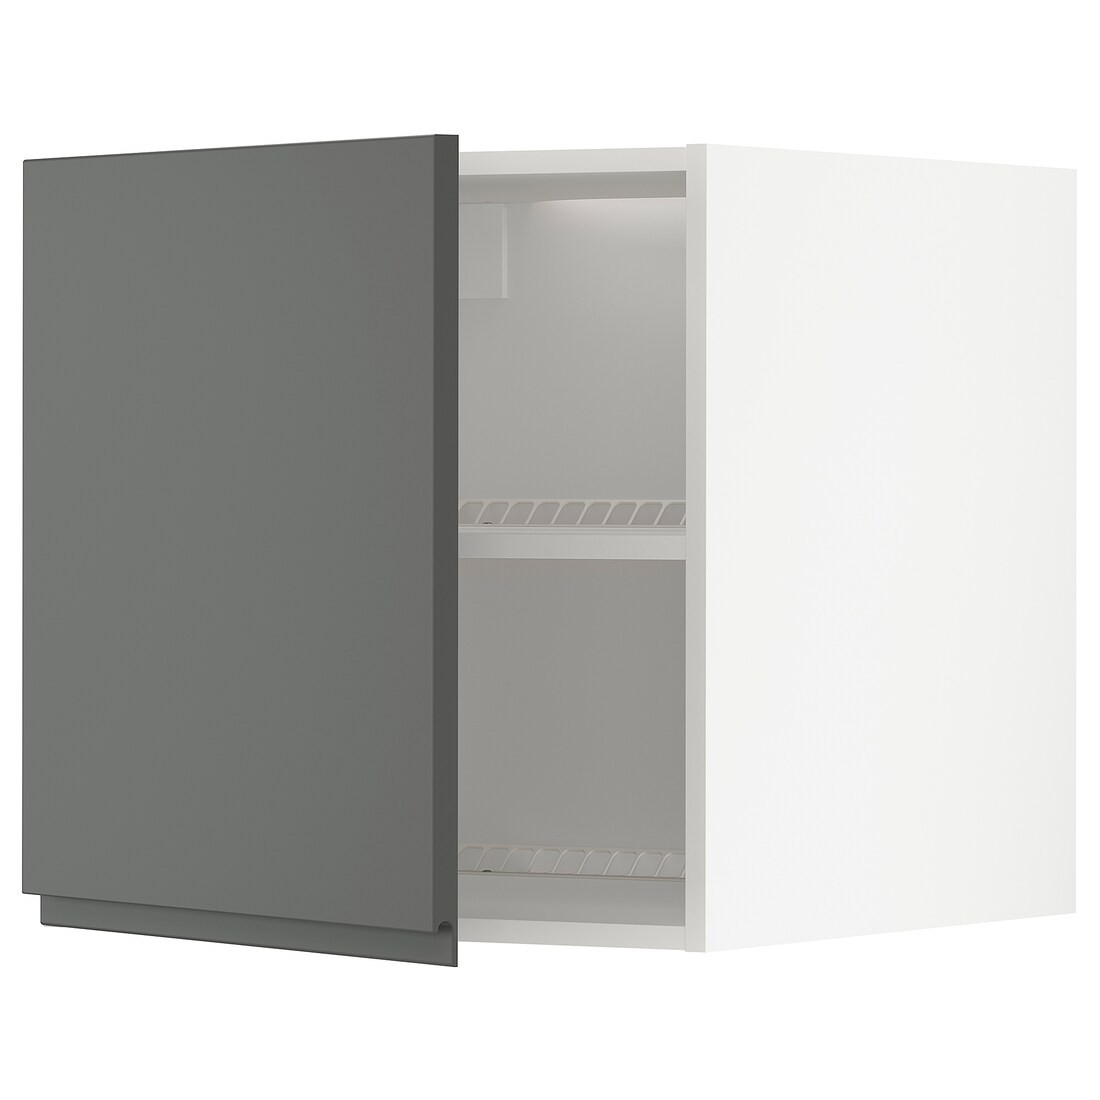 METOD МЕТОД Верхня шафа для холодильника / морозильника, білий / Voxtorp темно-сірий, 60x60 см